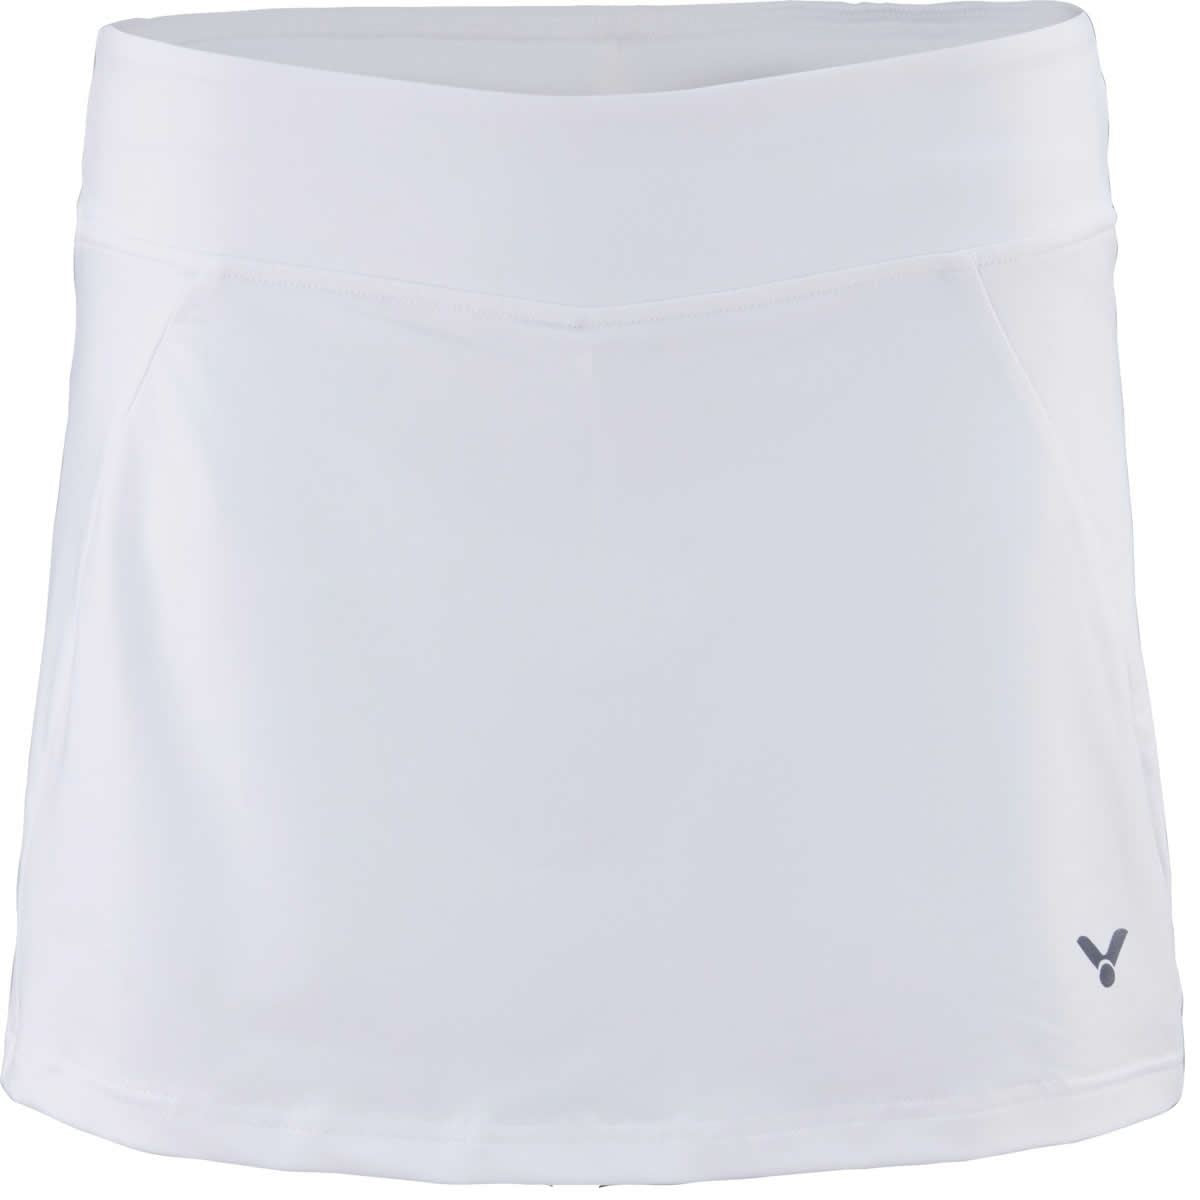 Victor Badminton Skirt Skort 4188 White